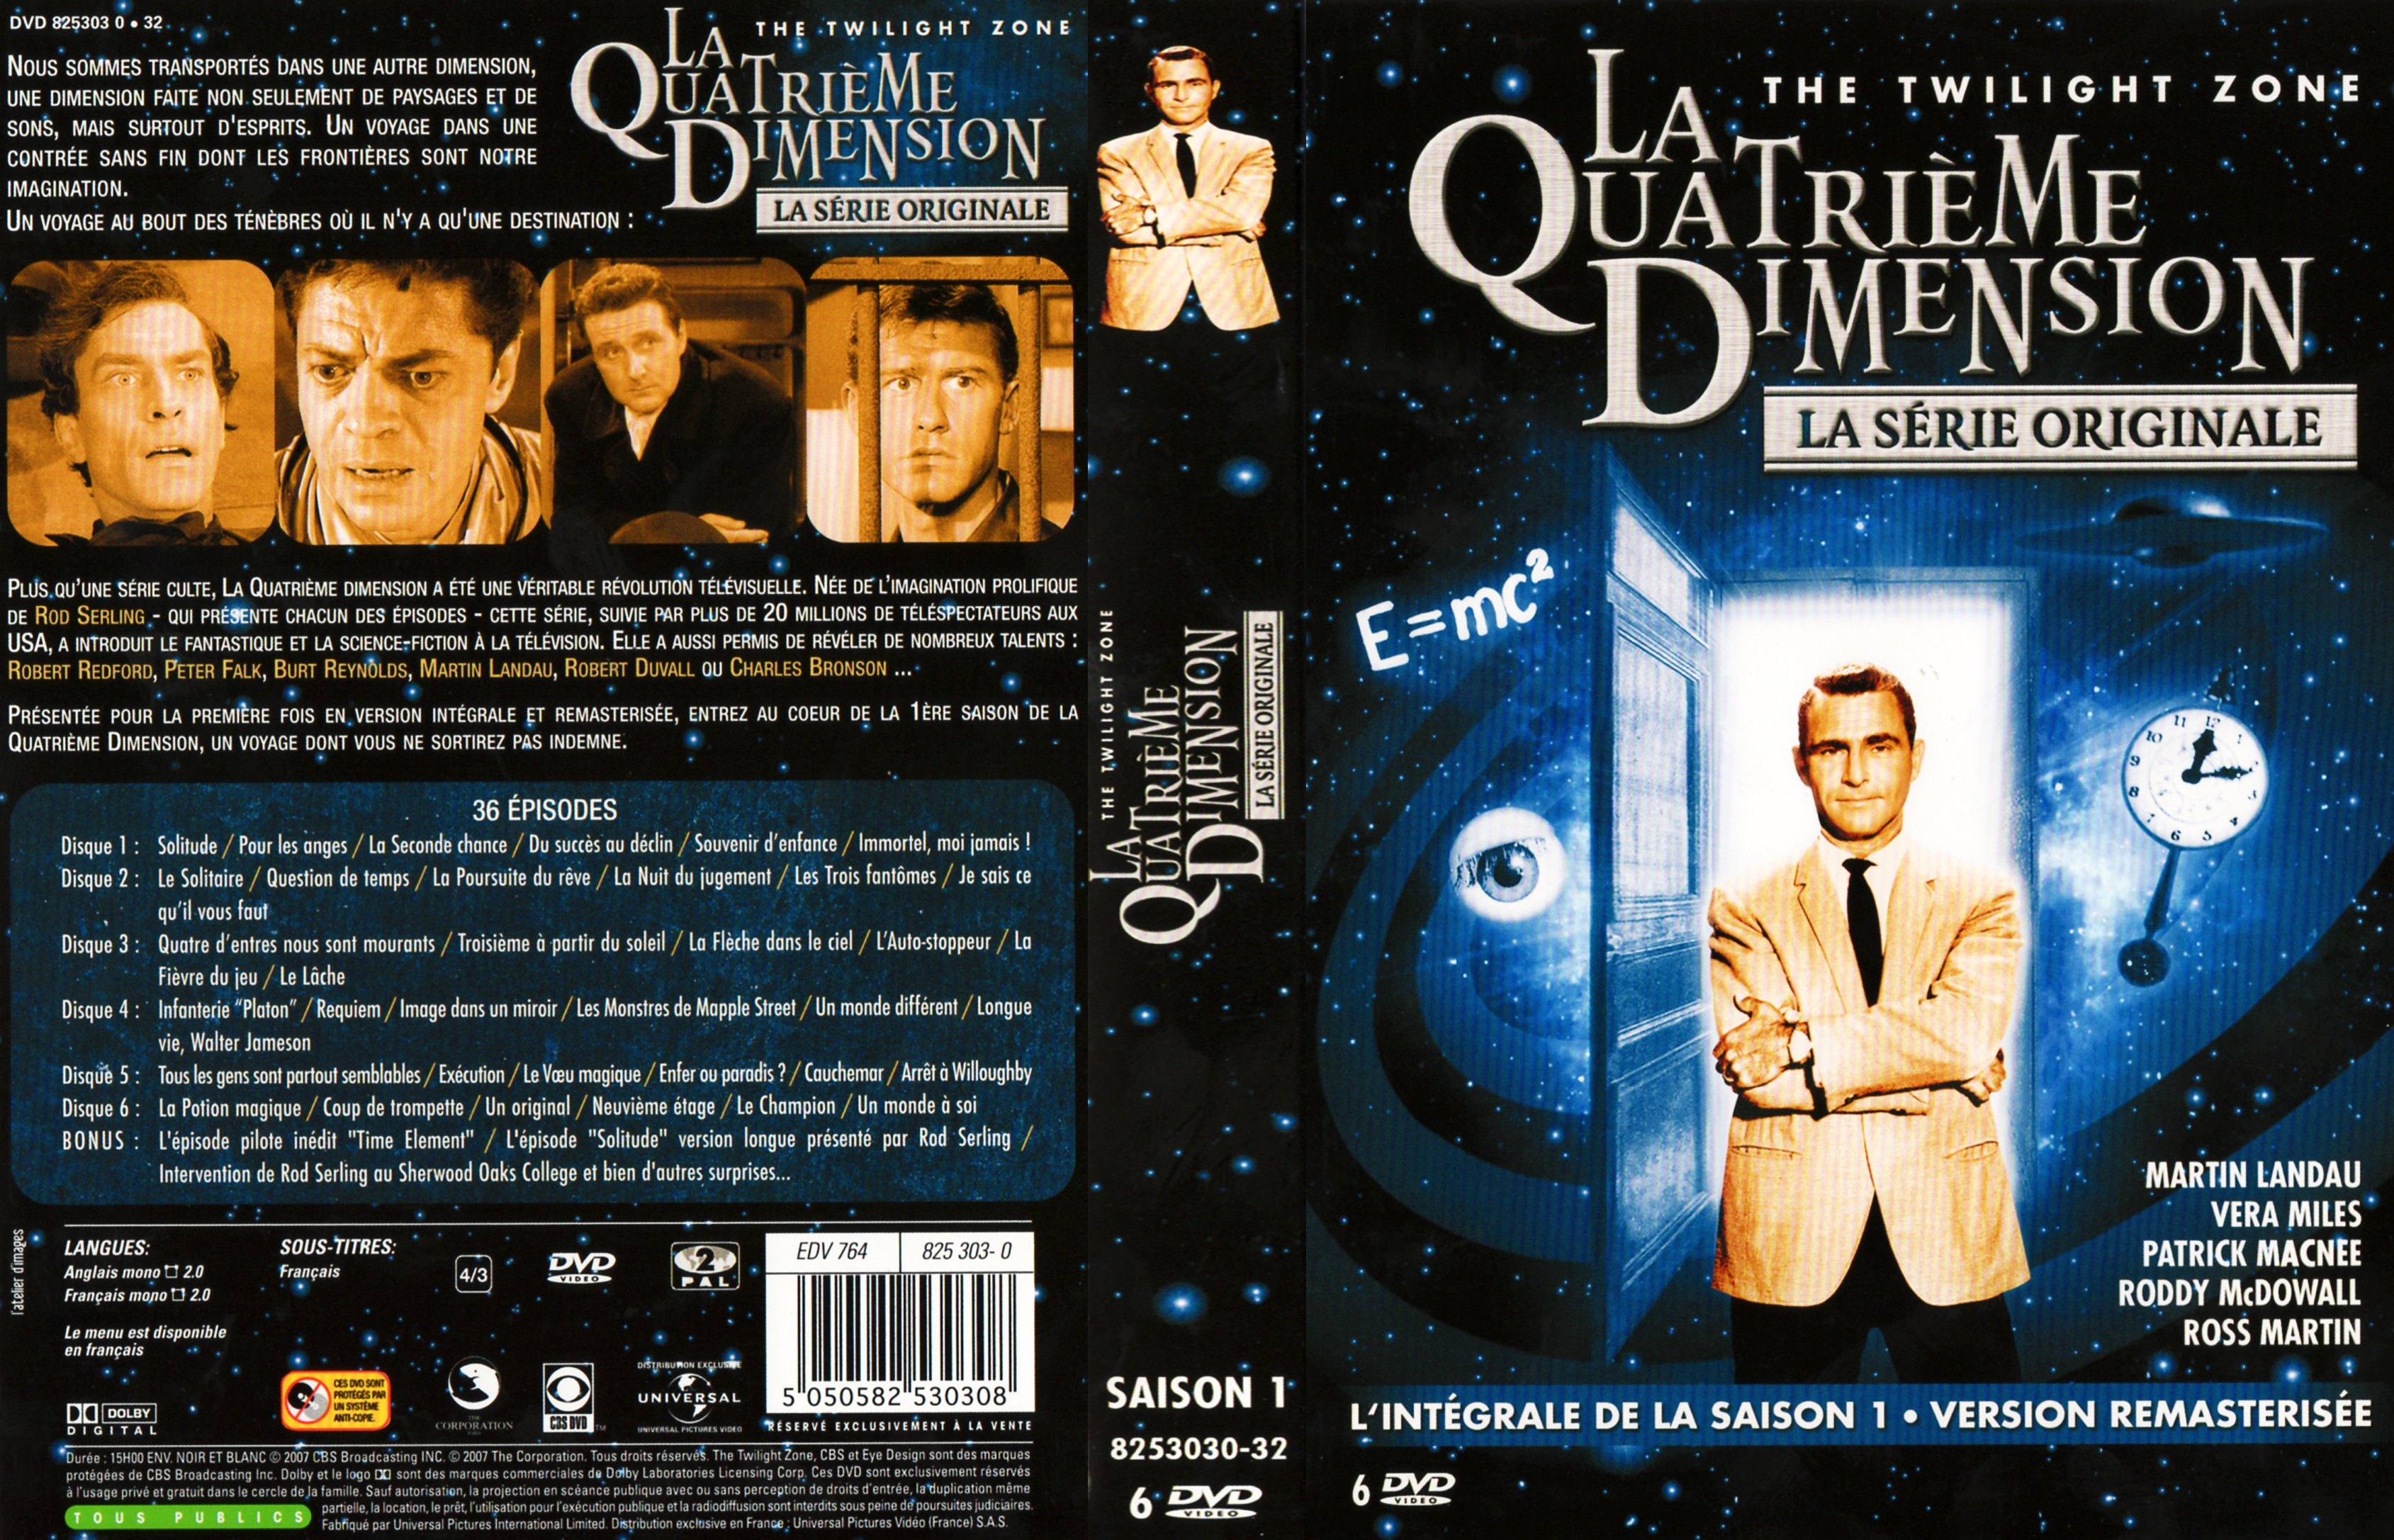 Jaquette DVD La quatrime dimension Saison 1 COFFRET